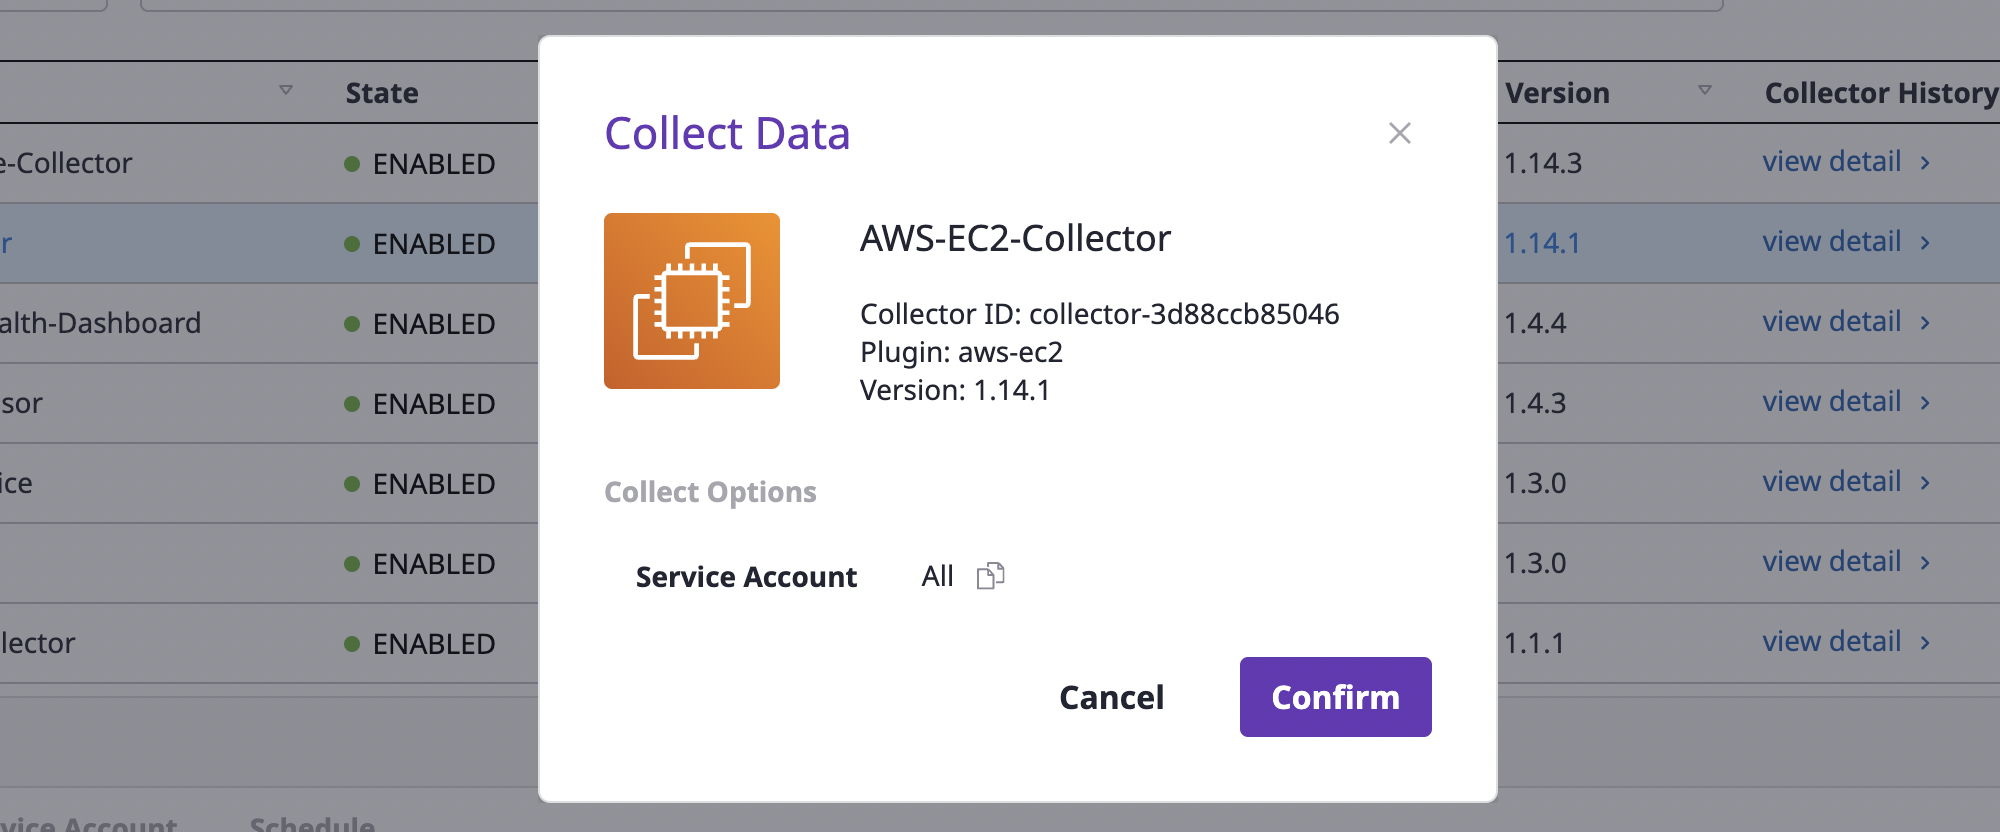 collector-collect-data-modal